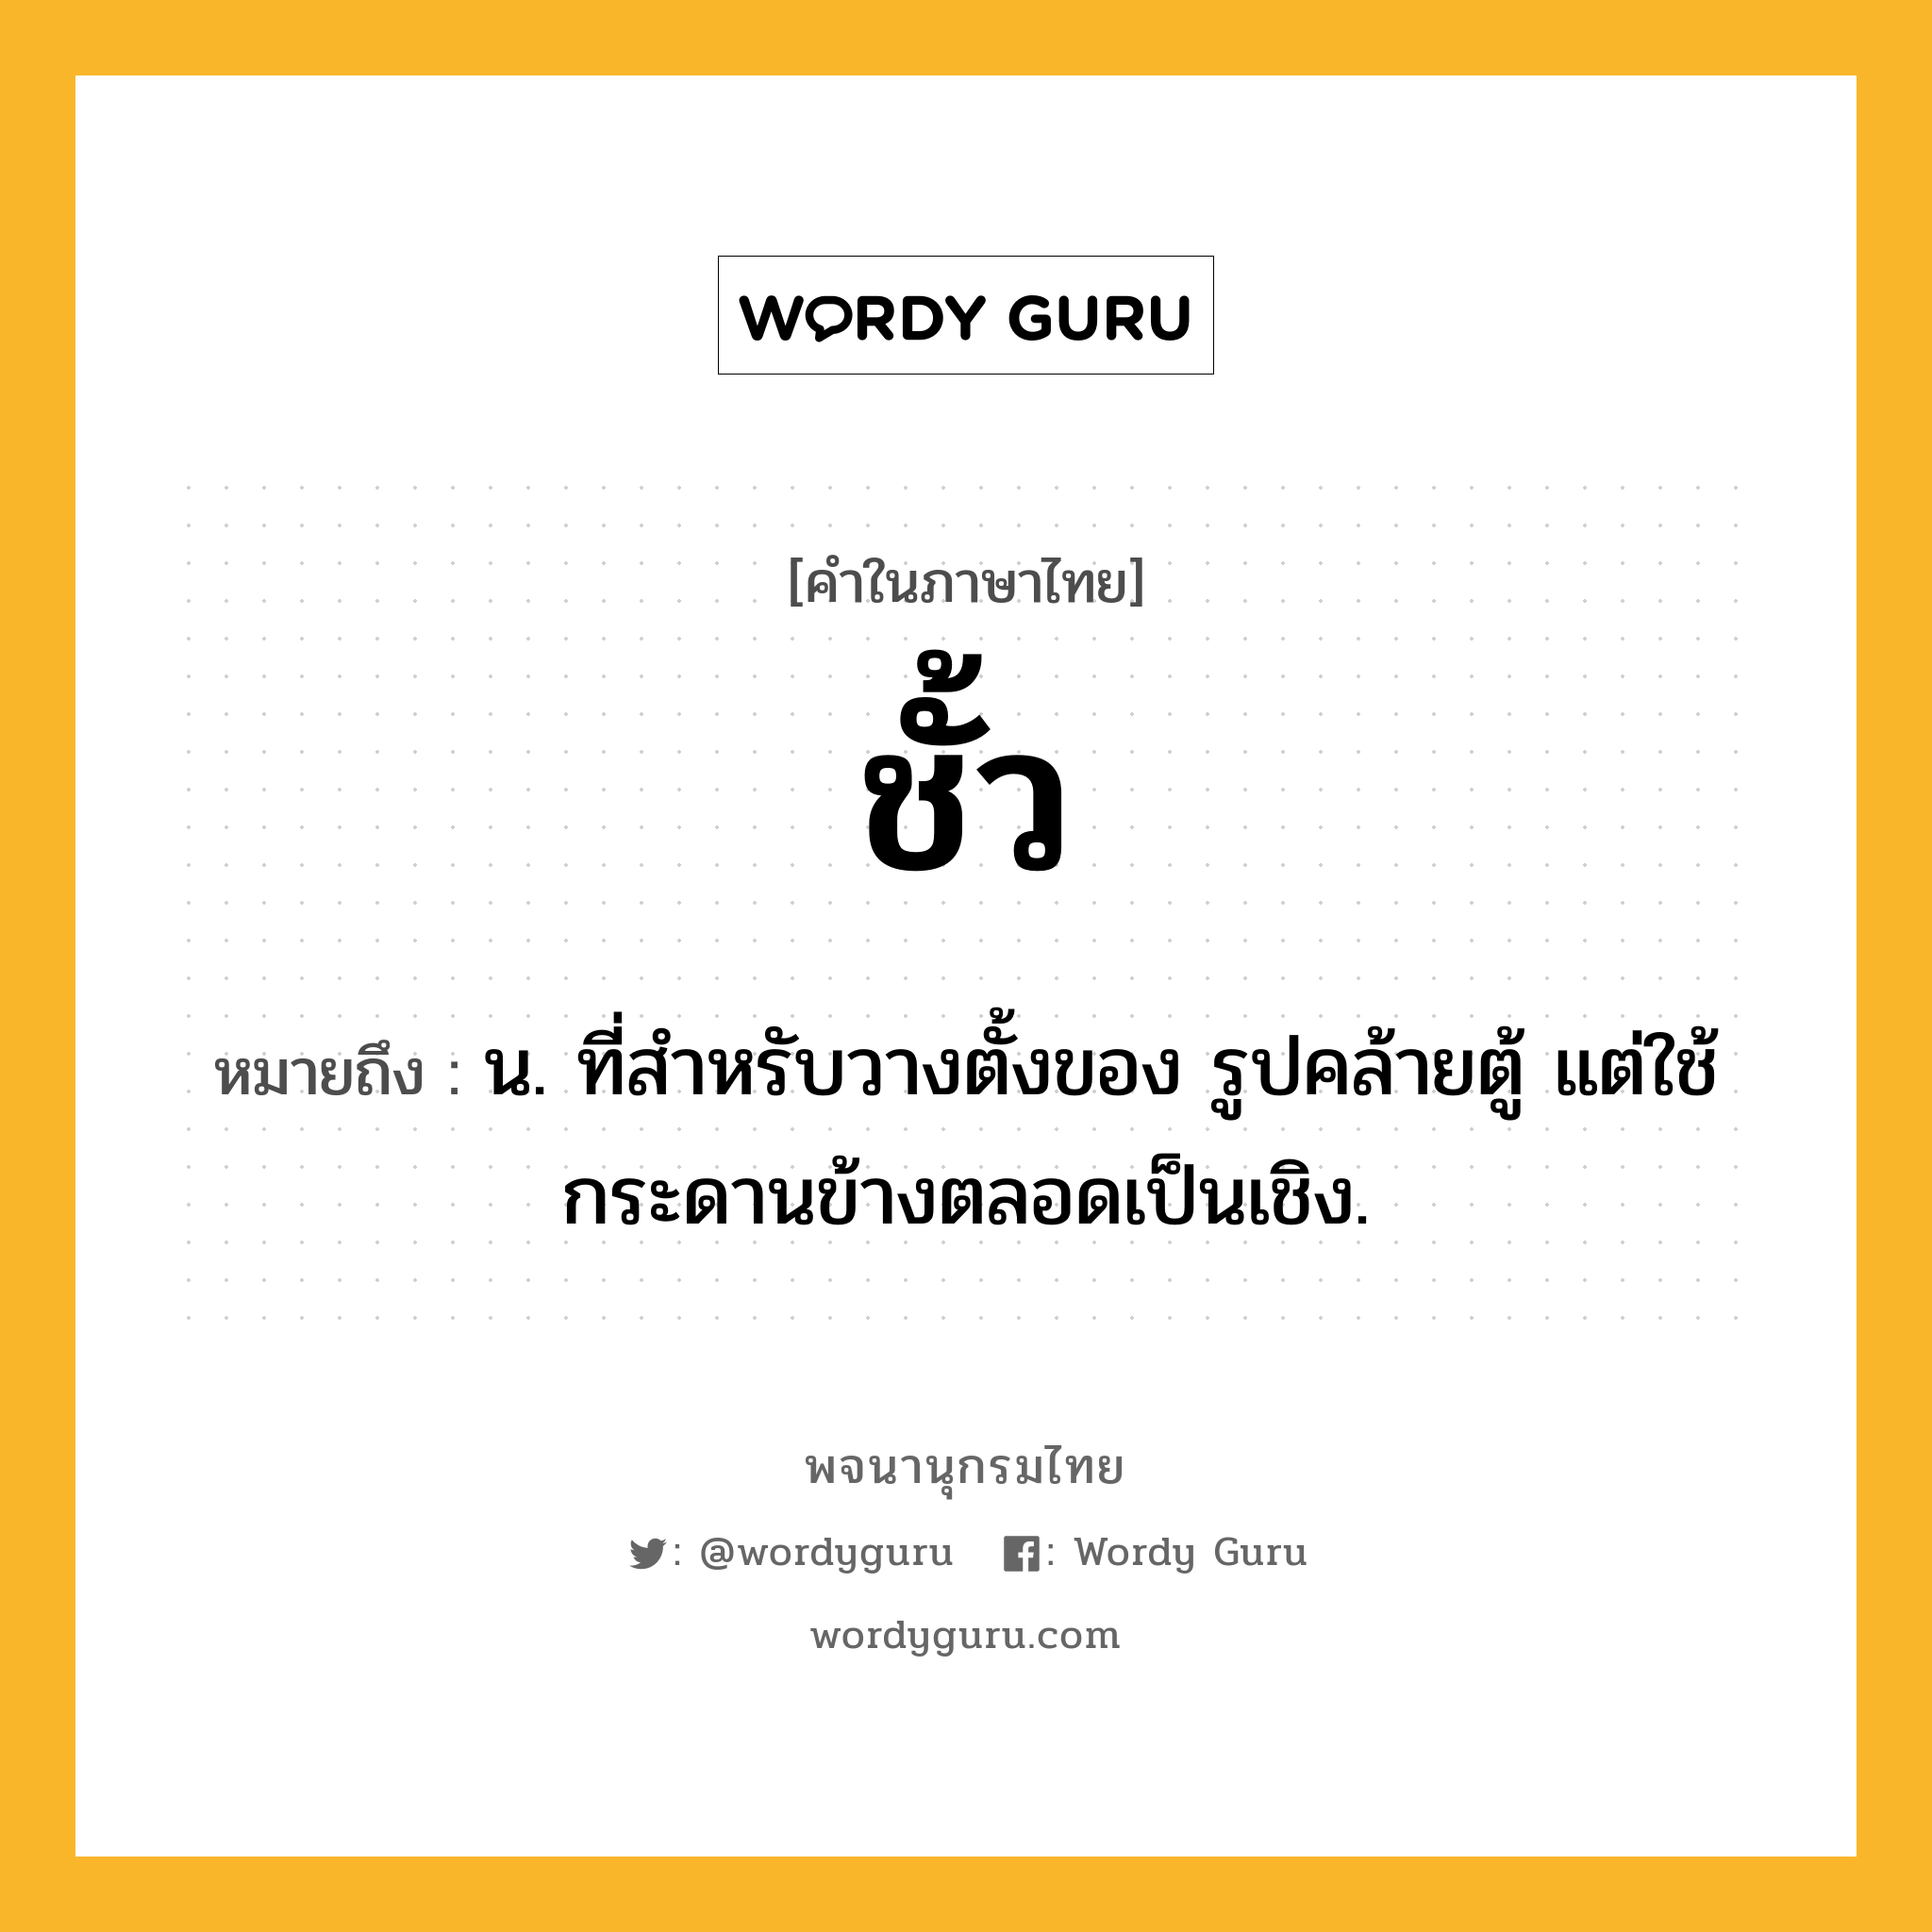 ชั้ว หมายถึงอะไร?, คำในภาษาไทย ชั้ว หมายถึง น. ที่สําหรับวางตั้งของ รูปคล้ายตู้ แต่ใช้กระดานข้างตลอดเป็นเชิง.